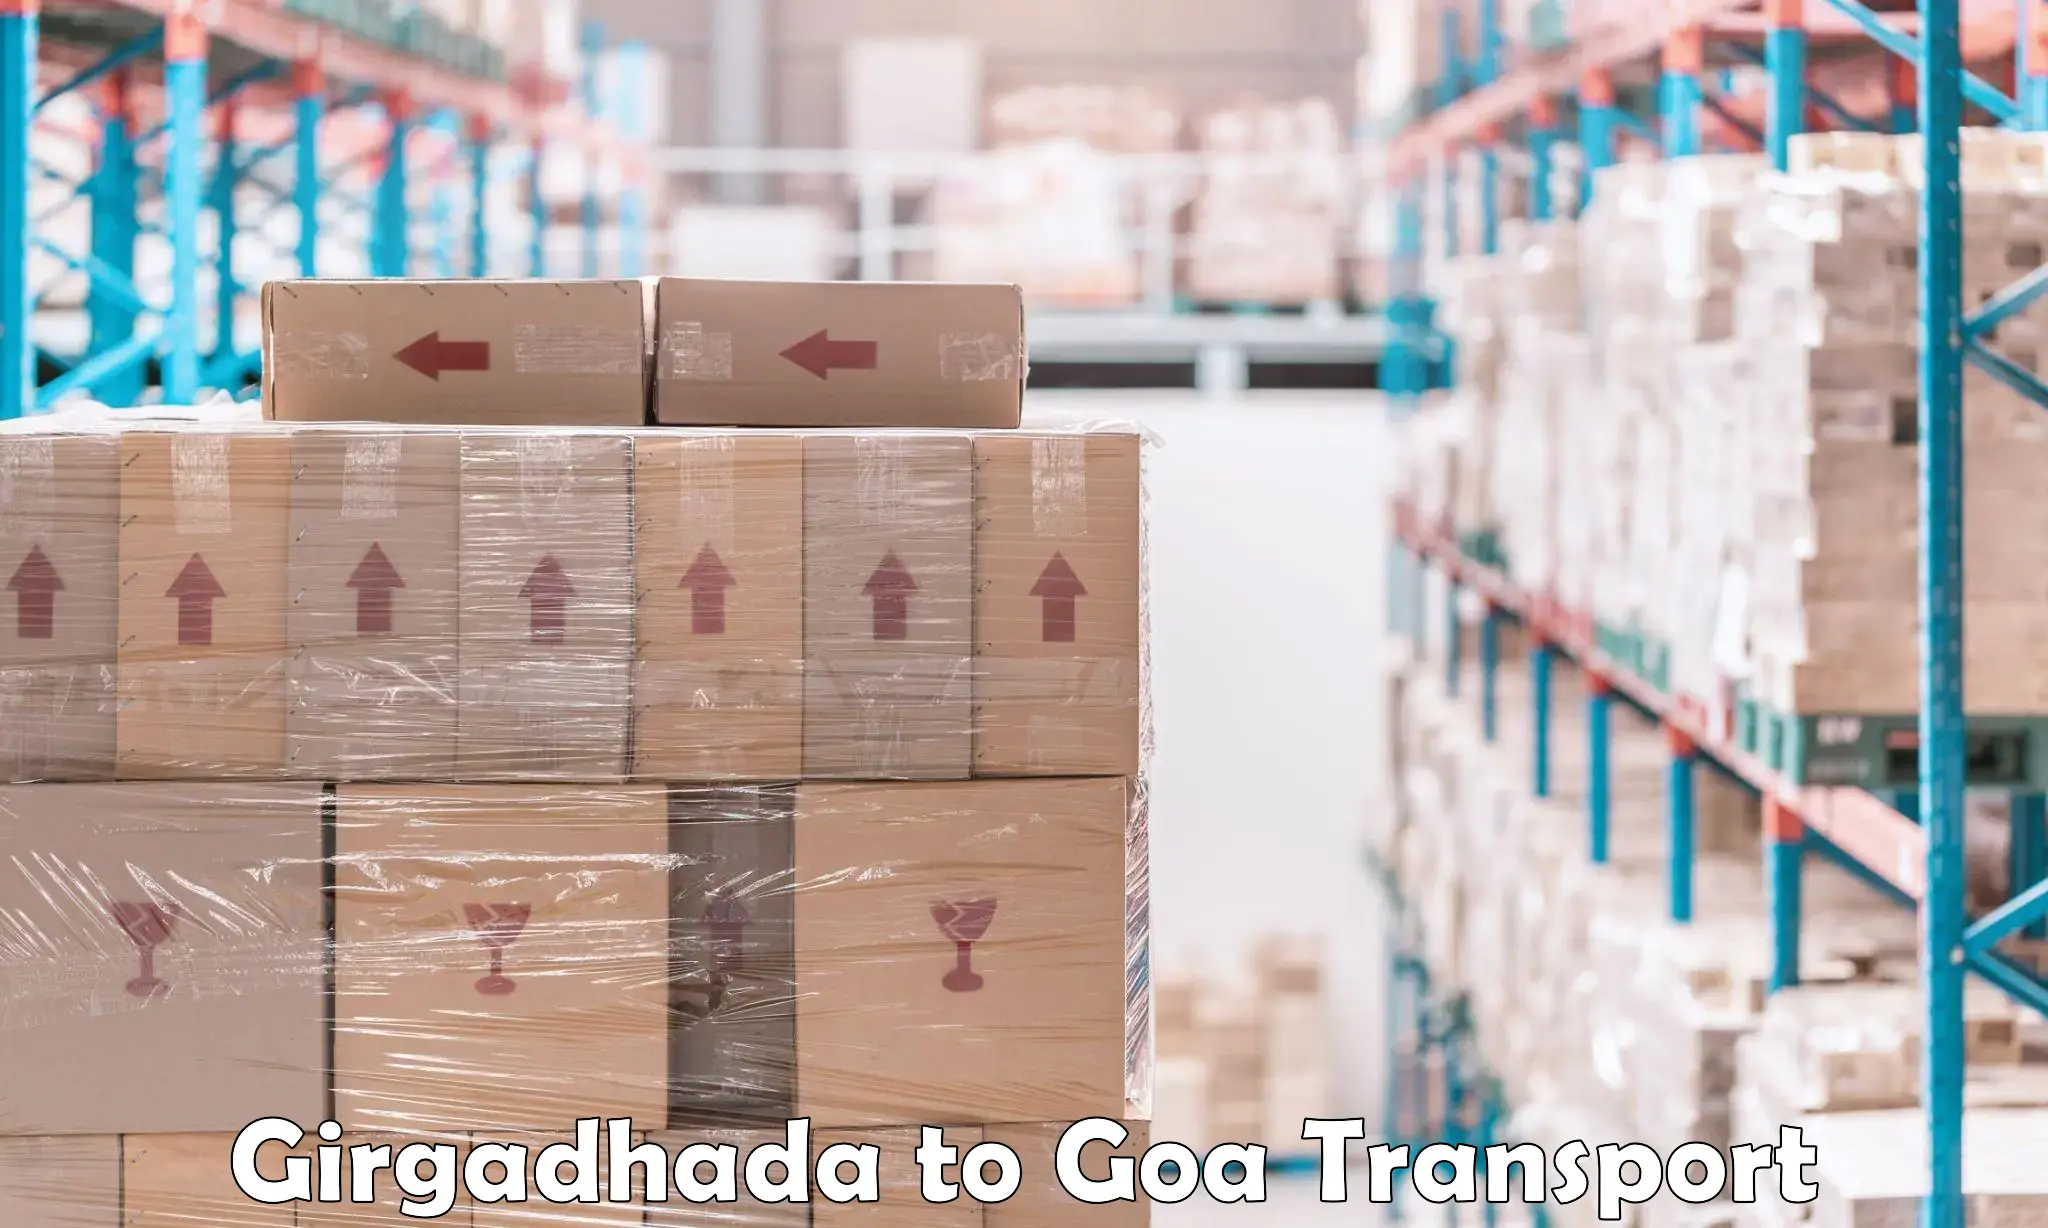 Daily transport service Girgadhada to Bardez